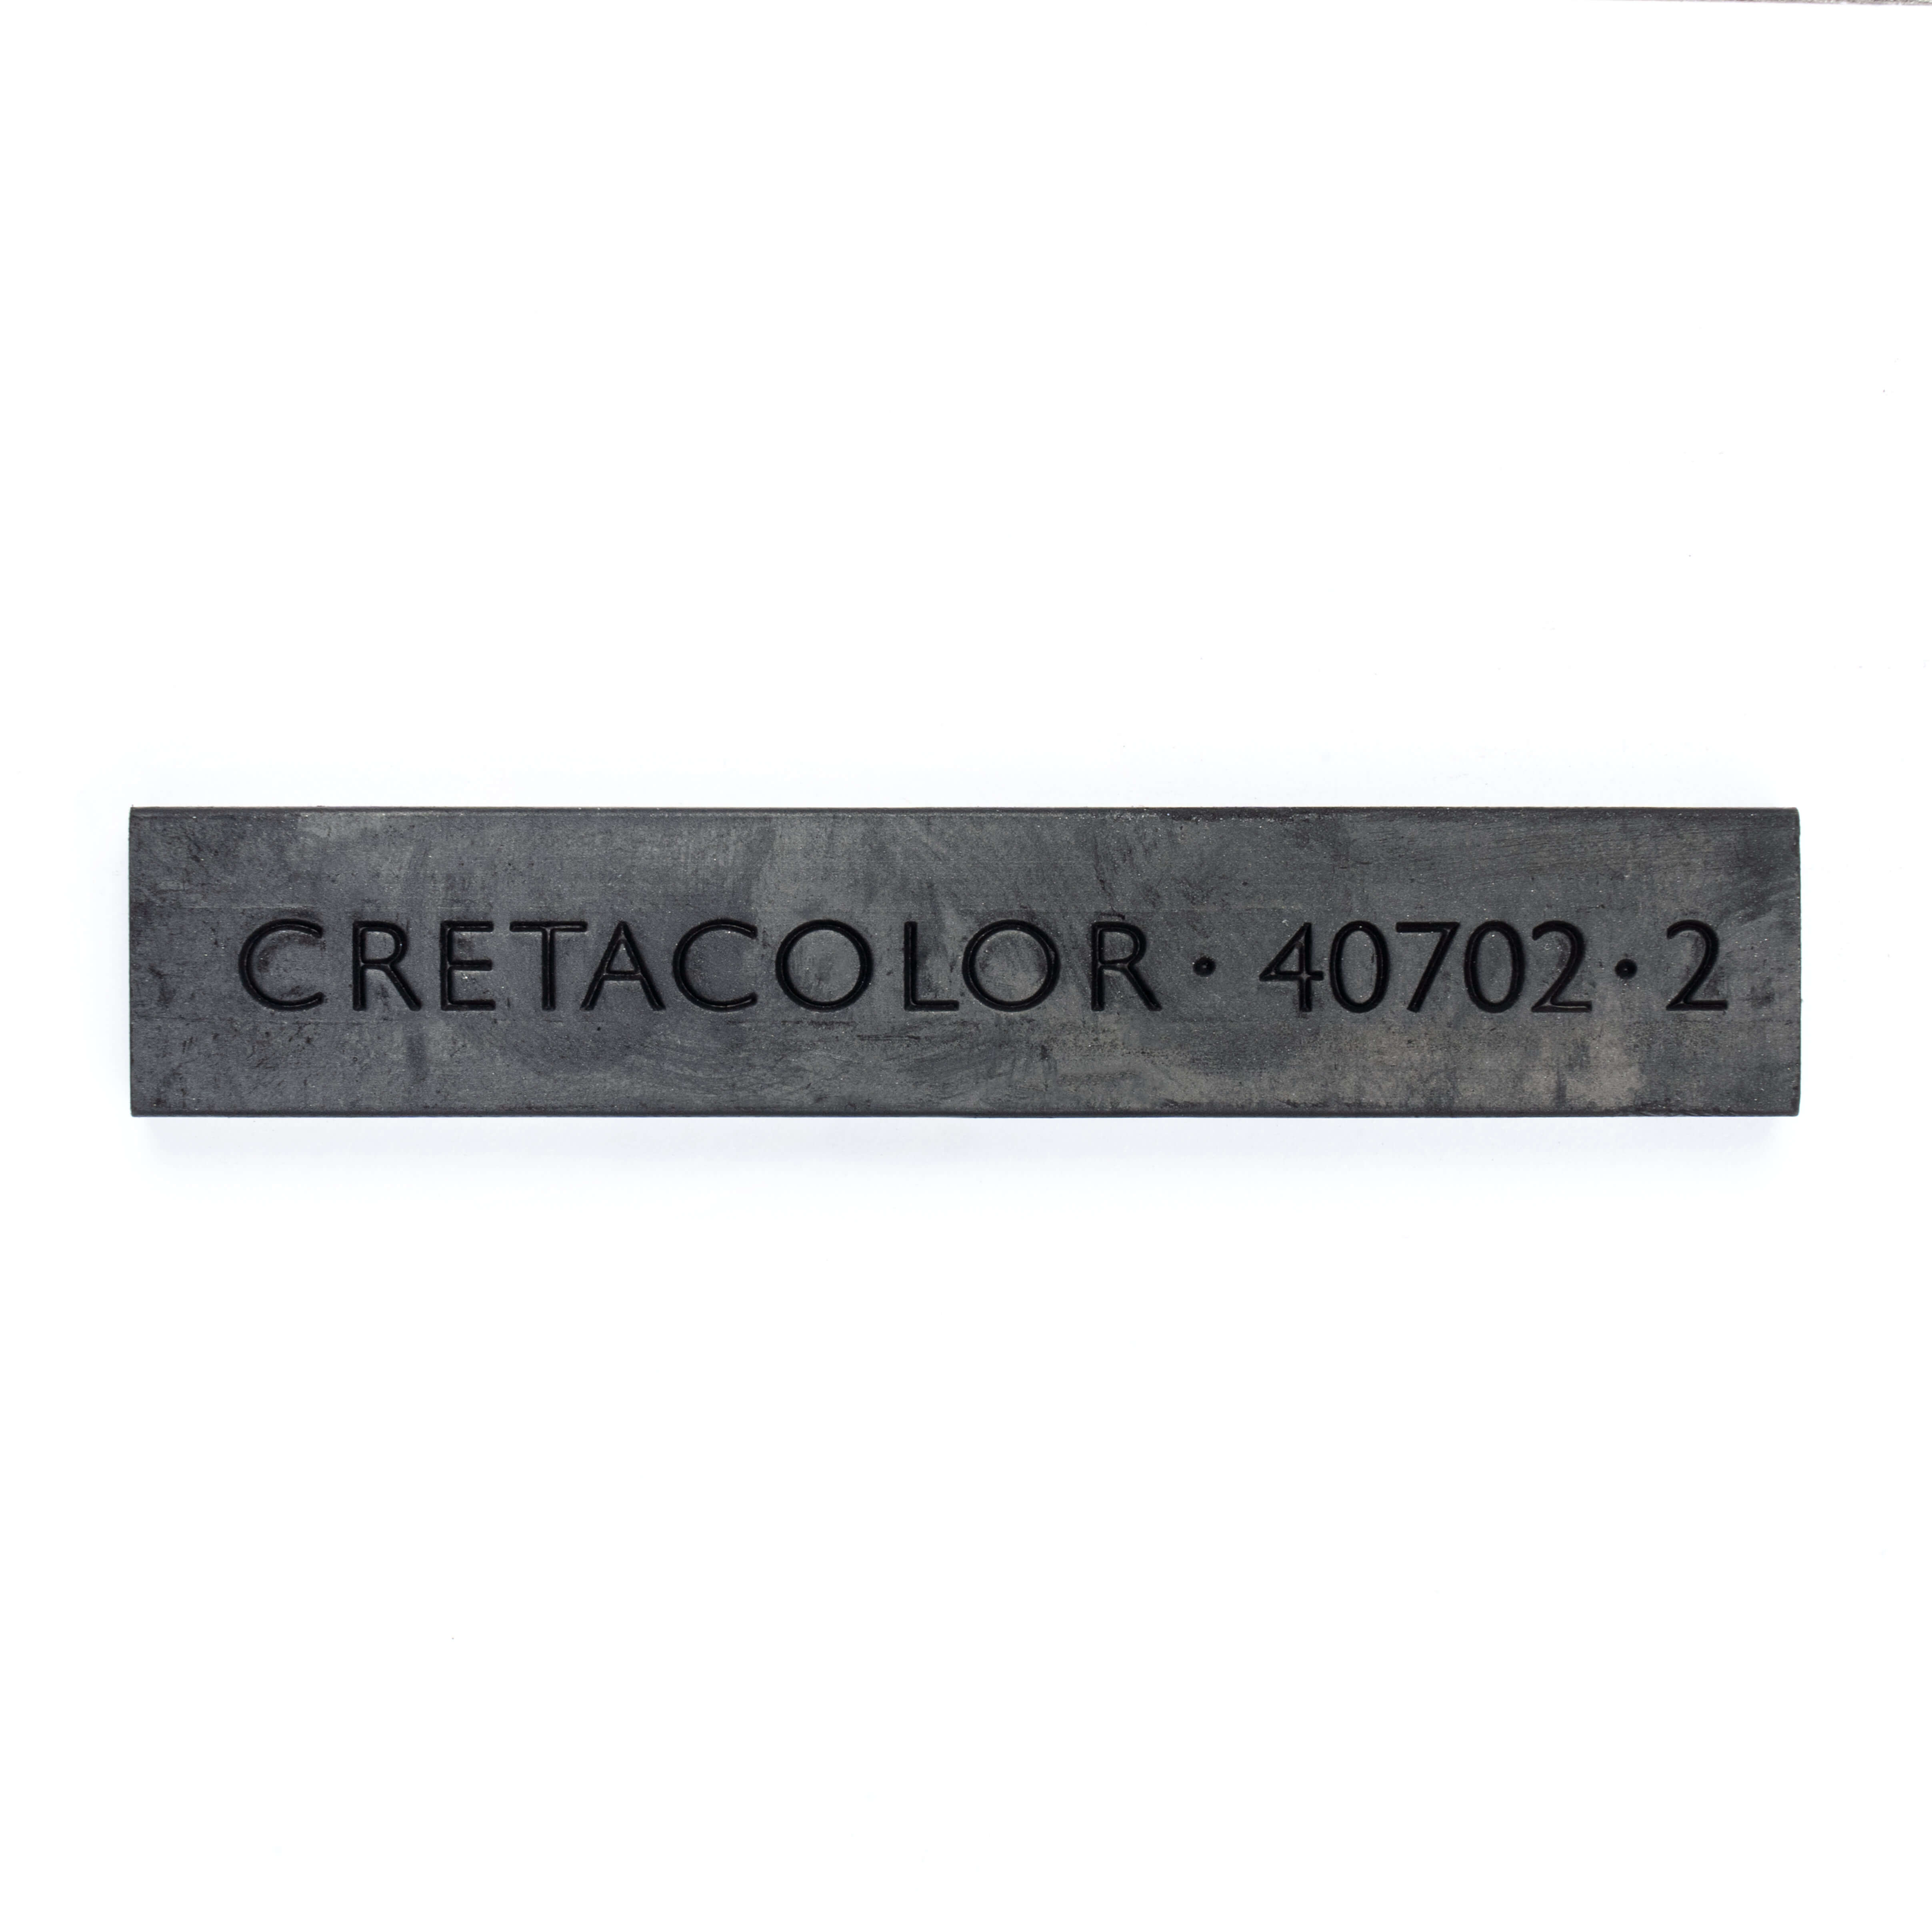 Cretacolor Sıkıştırılmış Kömür Füzen Çubuk Kesit 7x14x72mm 407 02